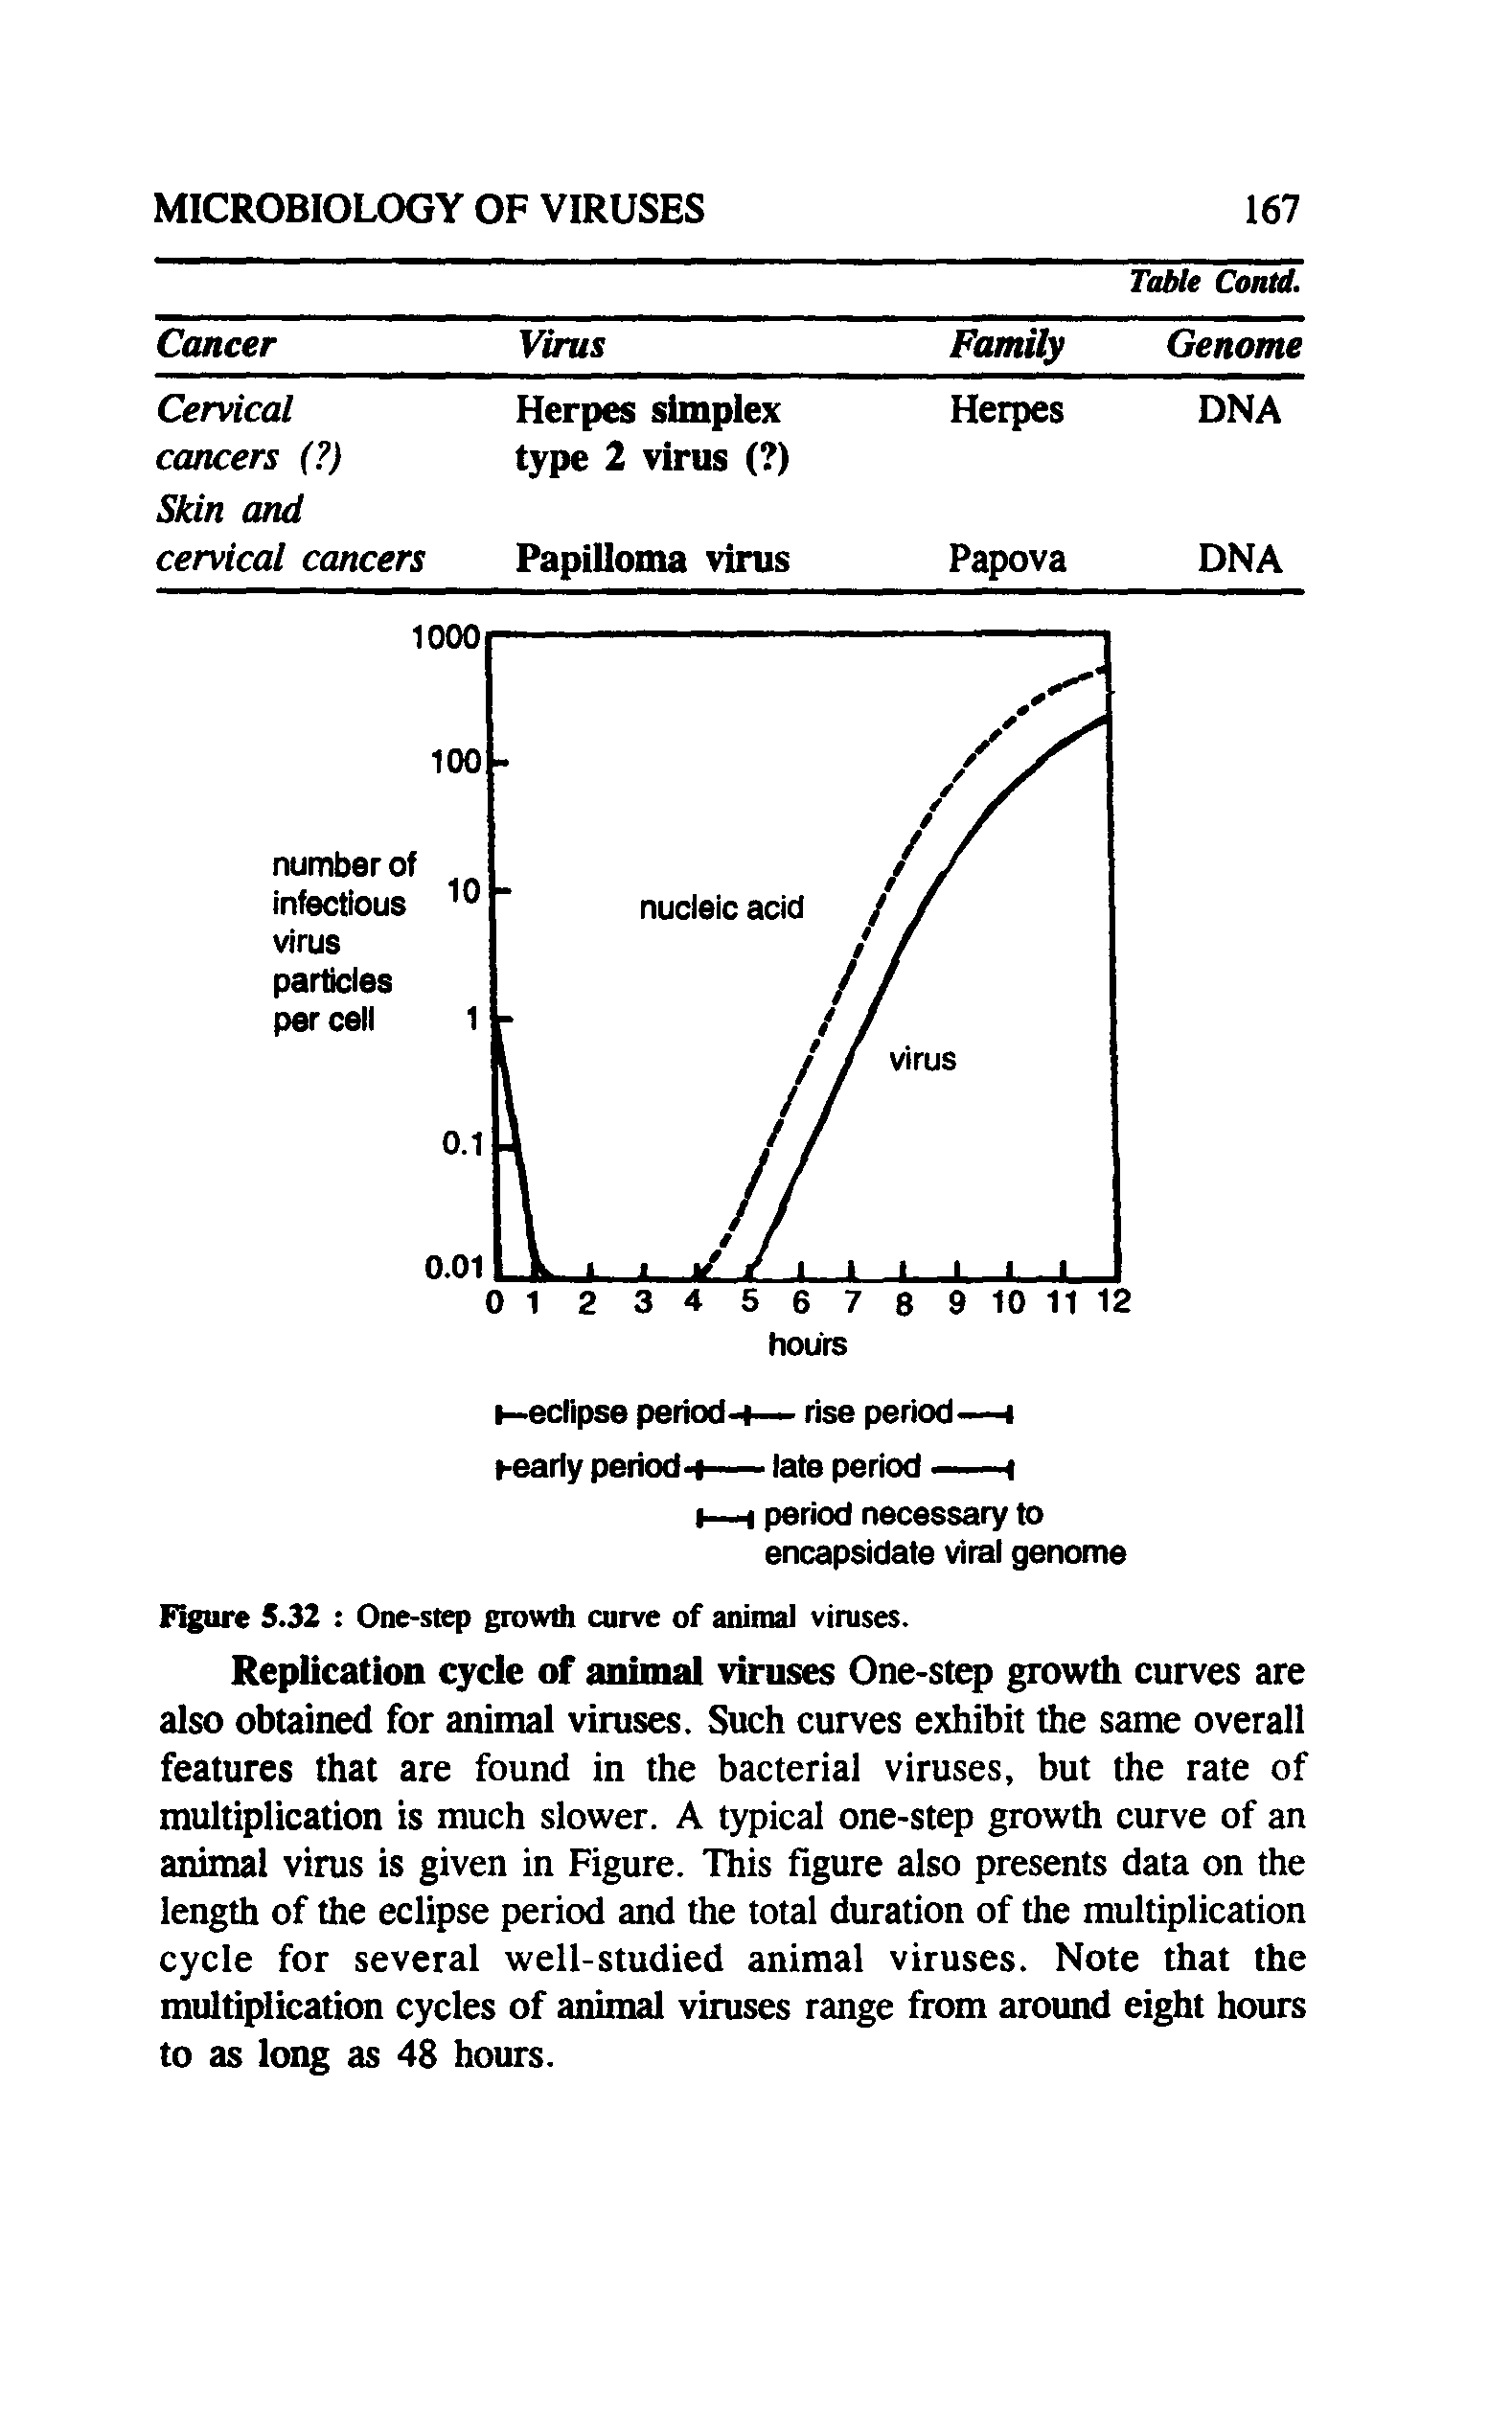 Figure 5.32 One-step growth curve of animal viruses.